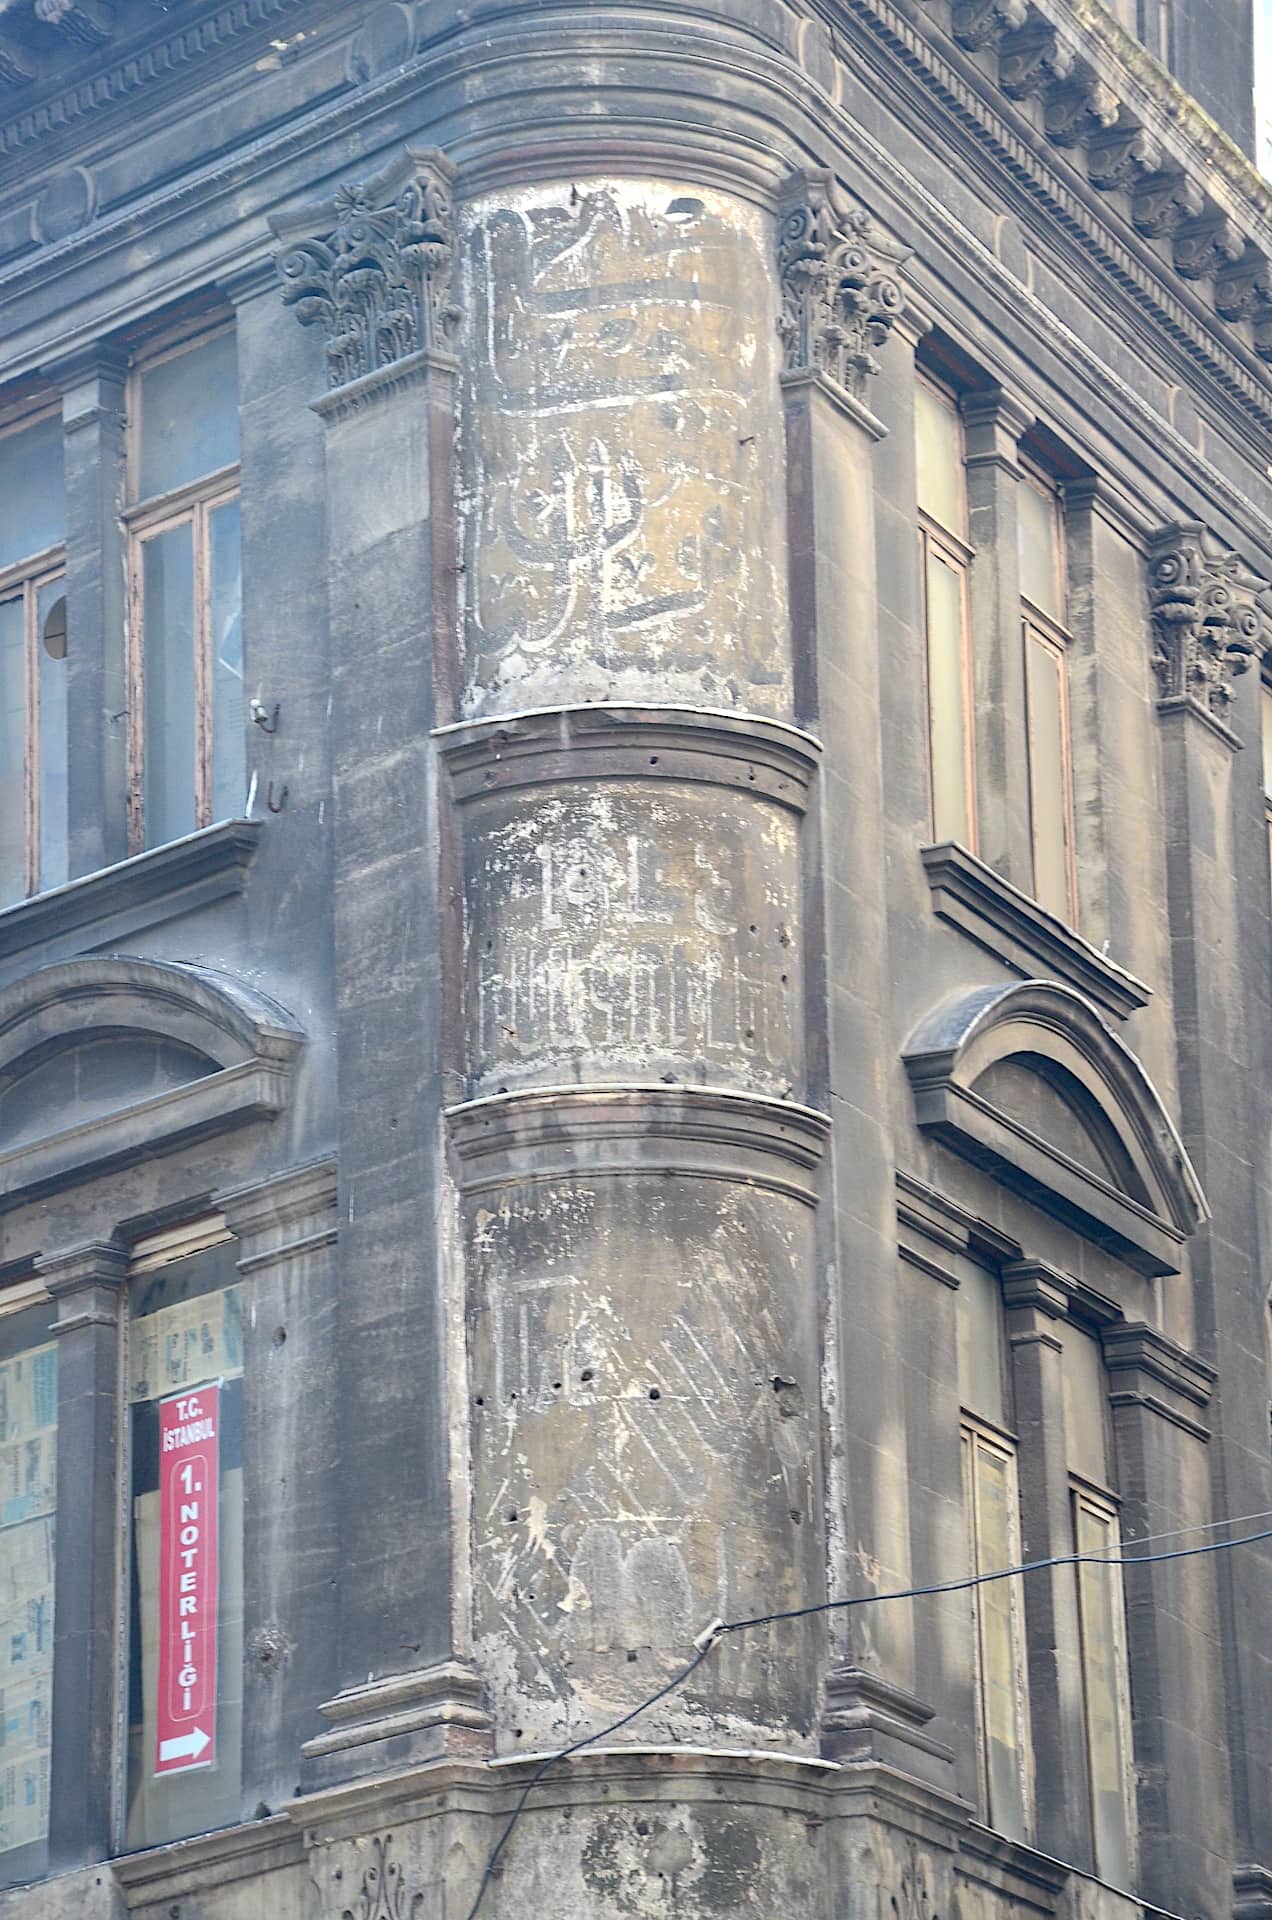 Faded advertisements on Sadıkiye Han in Eminönü, Istanbul, Turkey